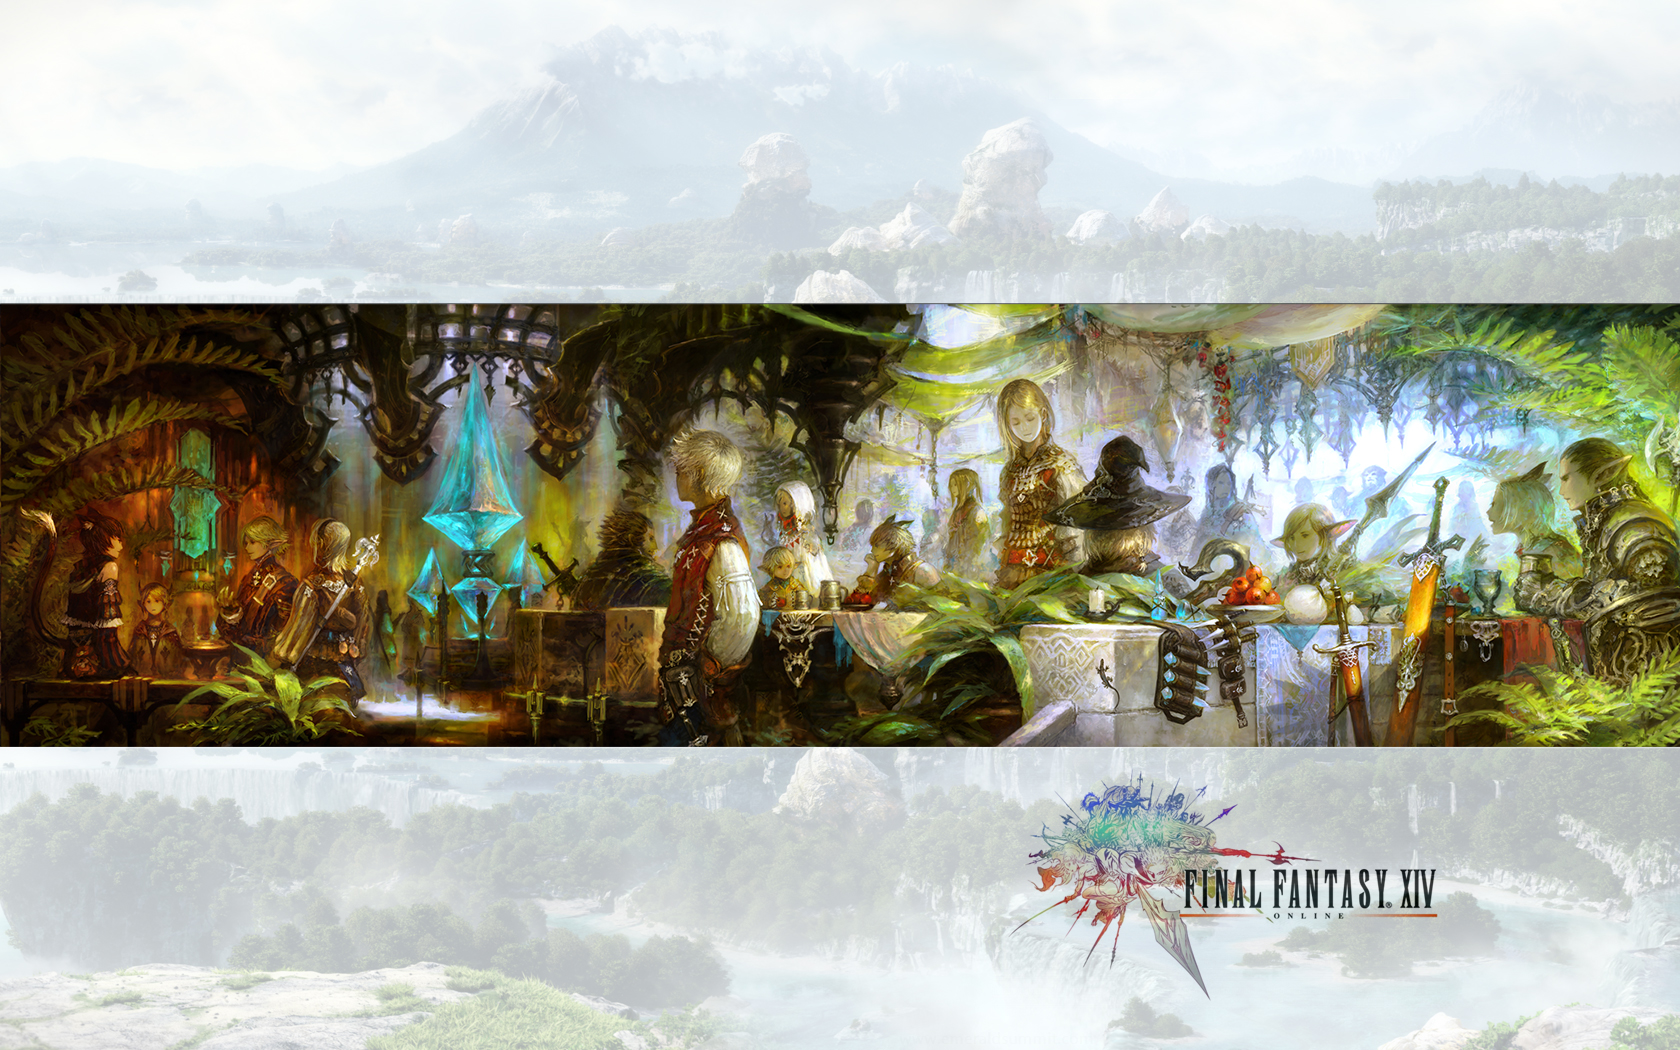 50 Final Fantasy 14 Wallpapers On Wallpapersafari